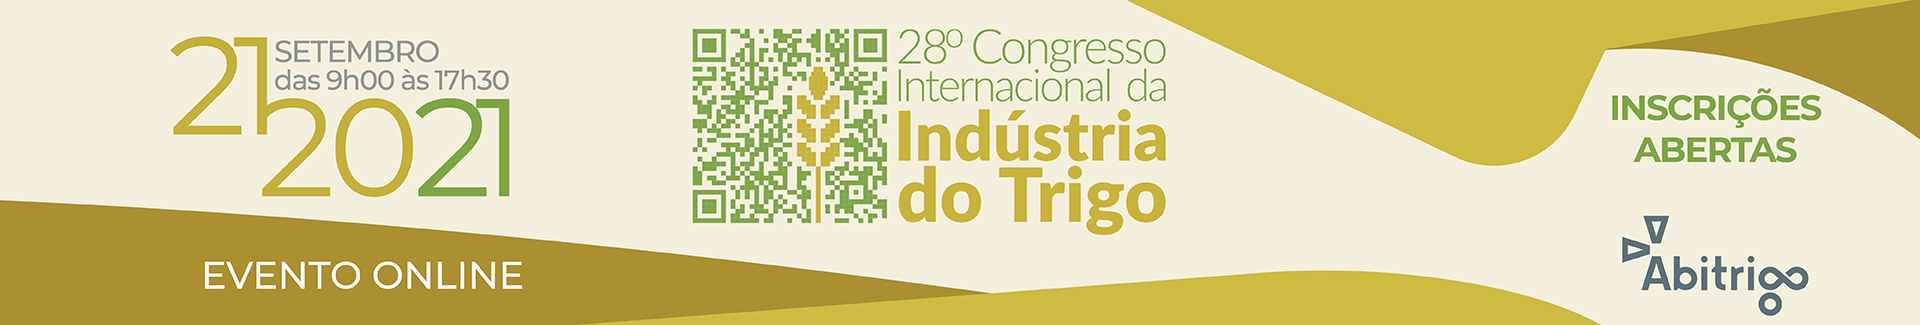 28º Congresso Internacional da Indústria do Trigo